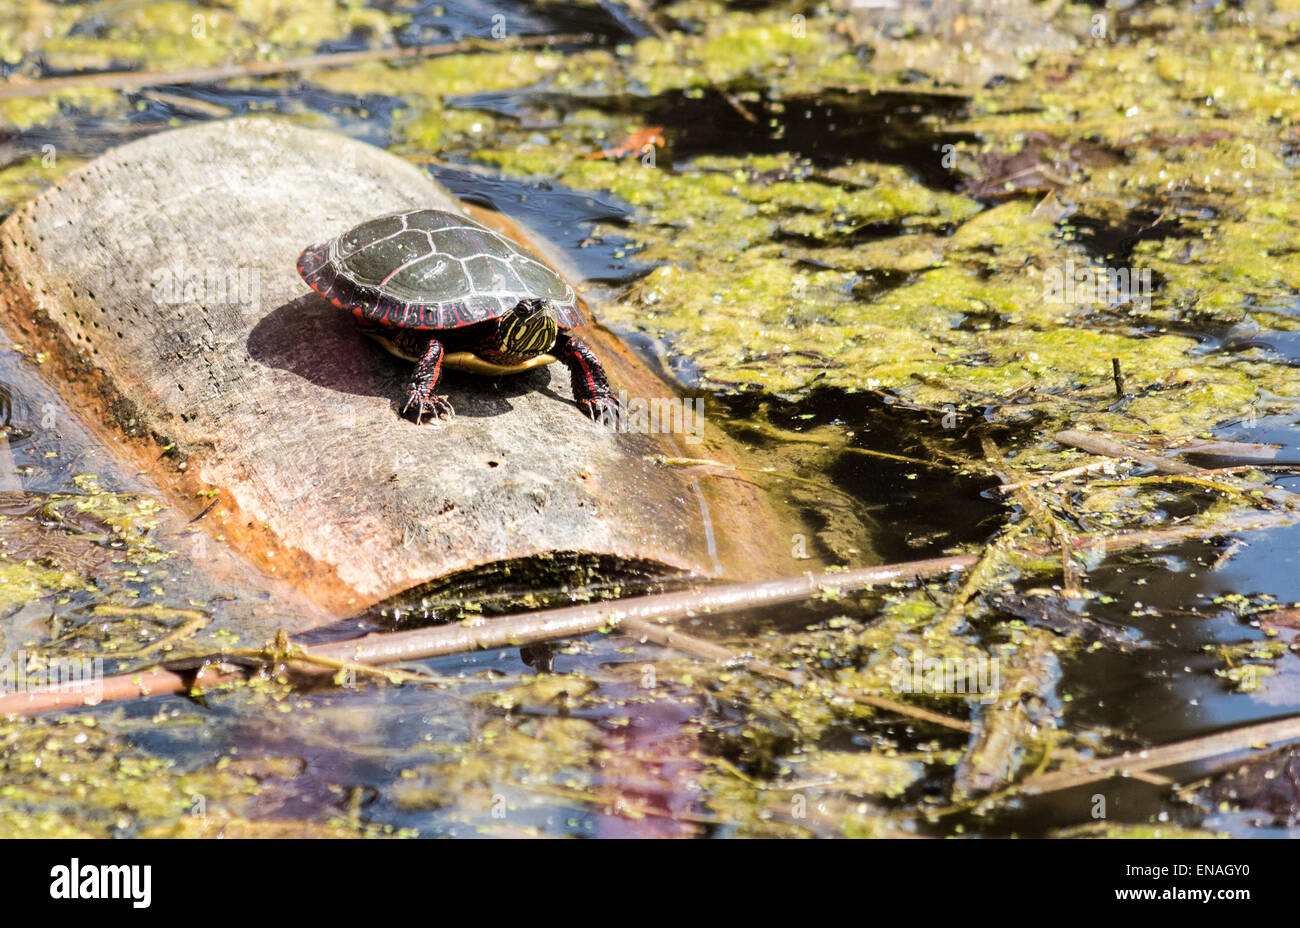 La tortue peinte est assis sur un rondin flottant dans une zone humide marais à profiter du soleil. Banque D'Images